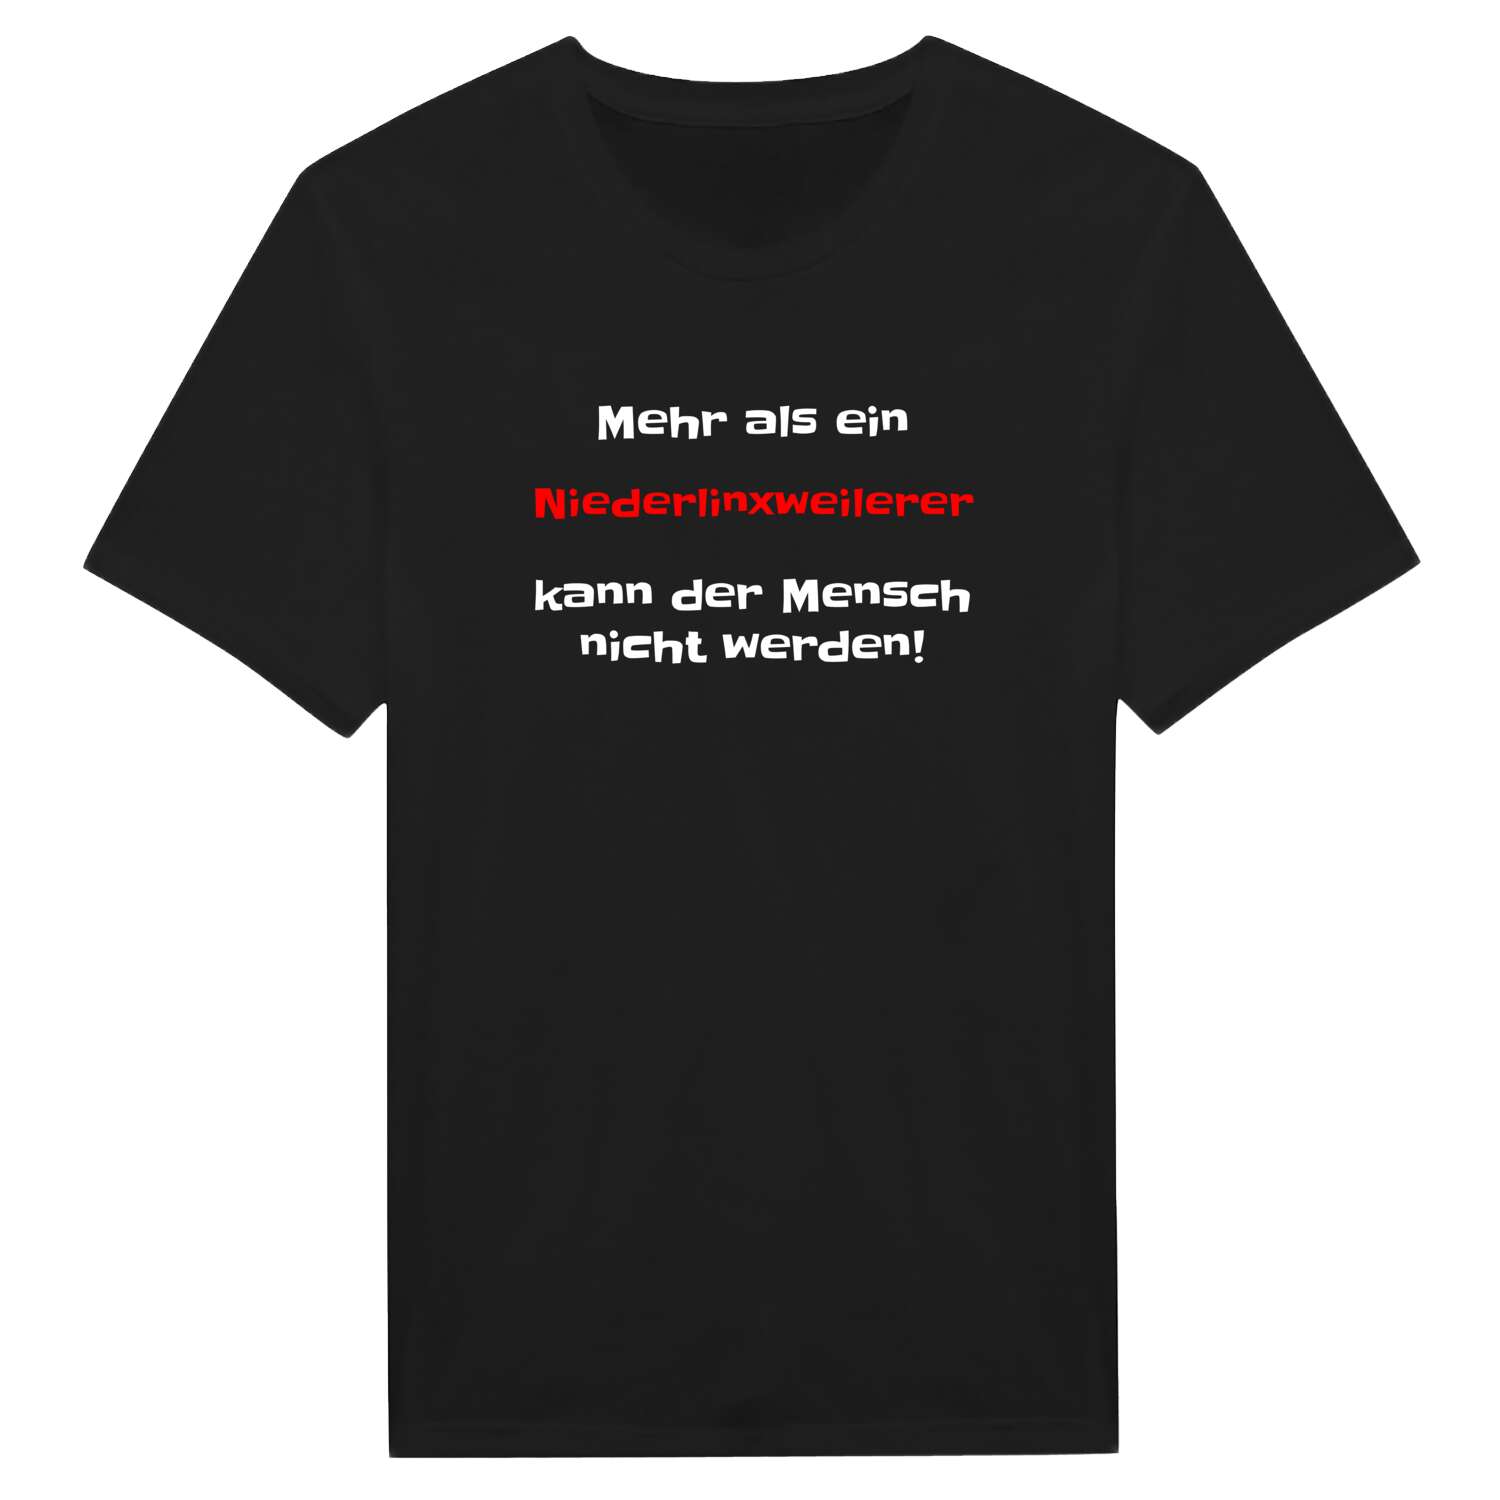 Niederlinxweiler T-Shirt »Mehr als ein«